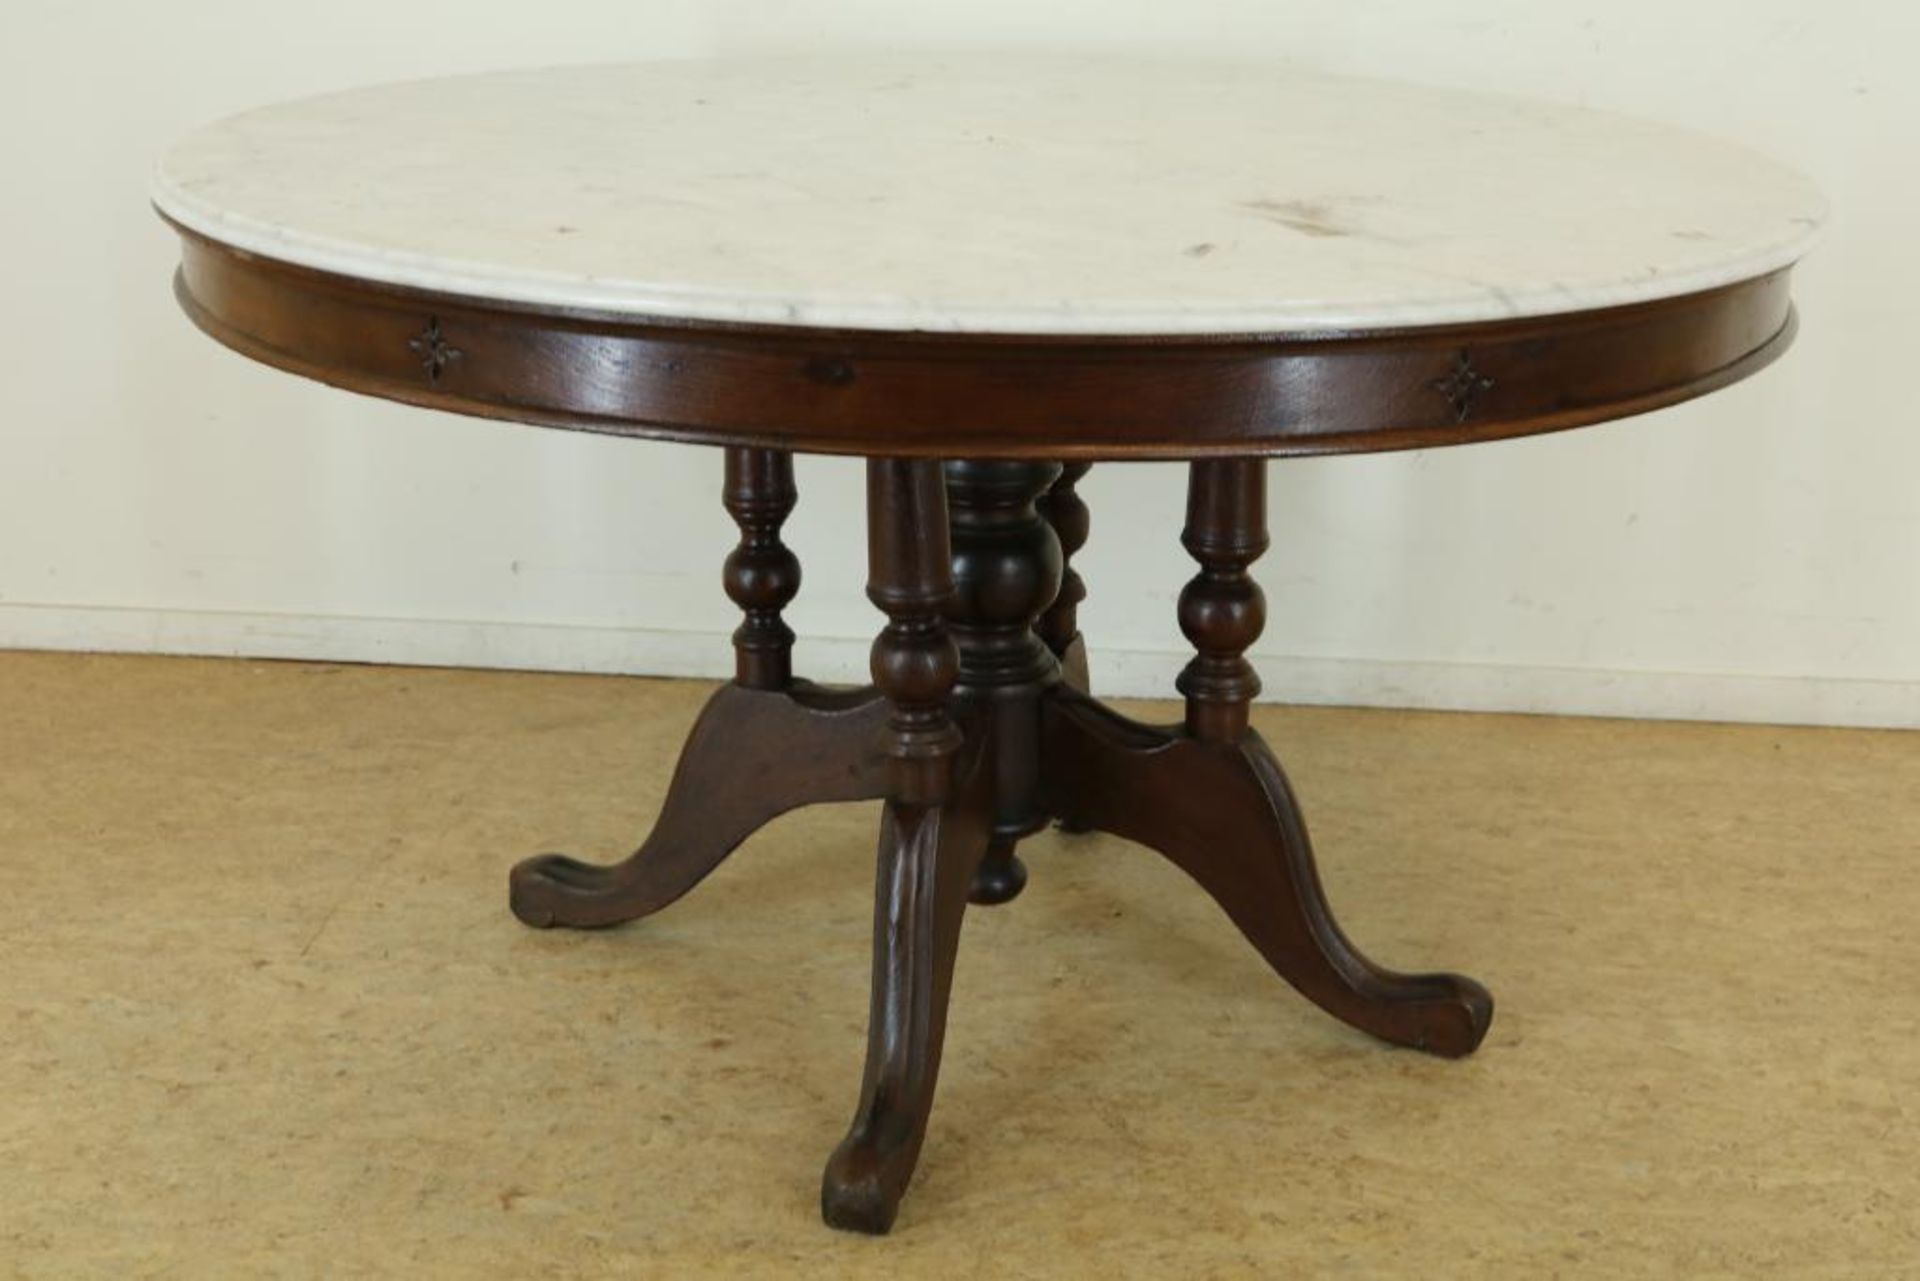 Teakhouten tafel met marmeren blad op gedraaide poten uitlopend in 4-sprant, h. 78, diam. 137 cm.